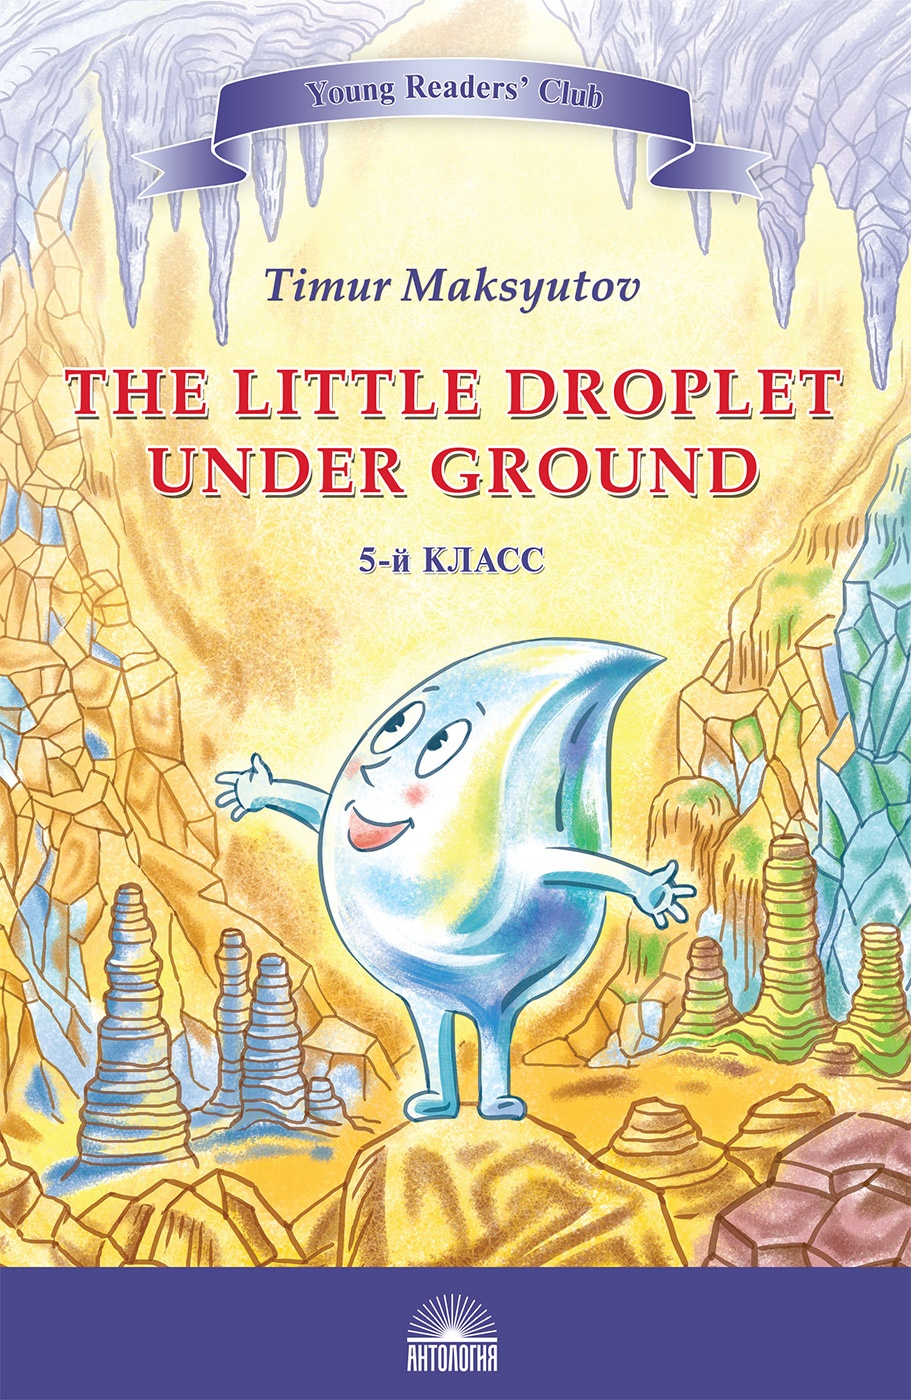 Капелька под землёй (The Little Droplet Under Ground). Кн. для чт. на англ. яз. в 5 кл.